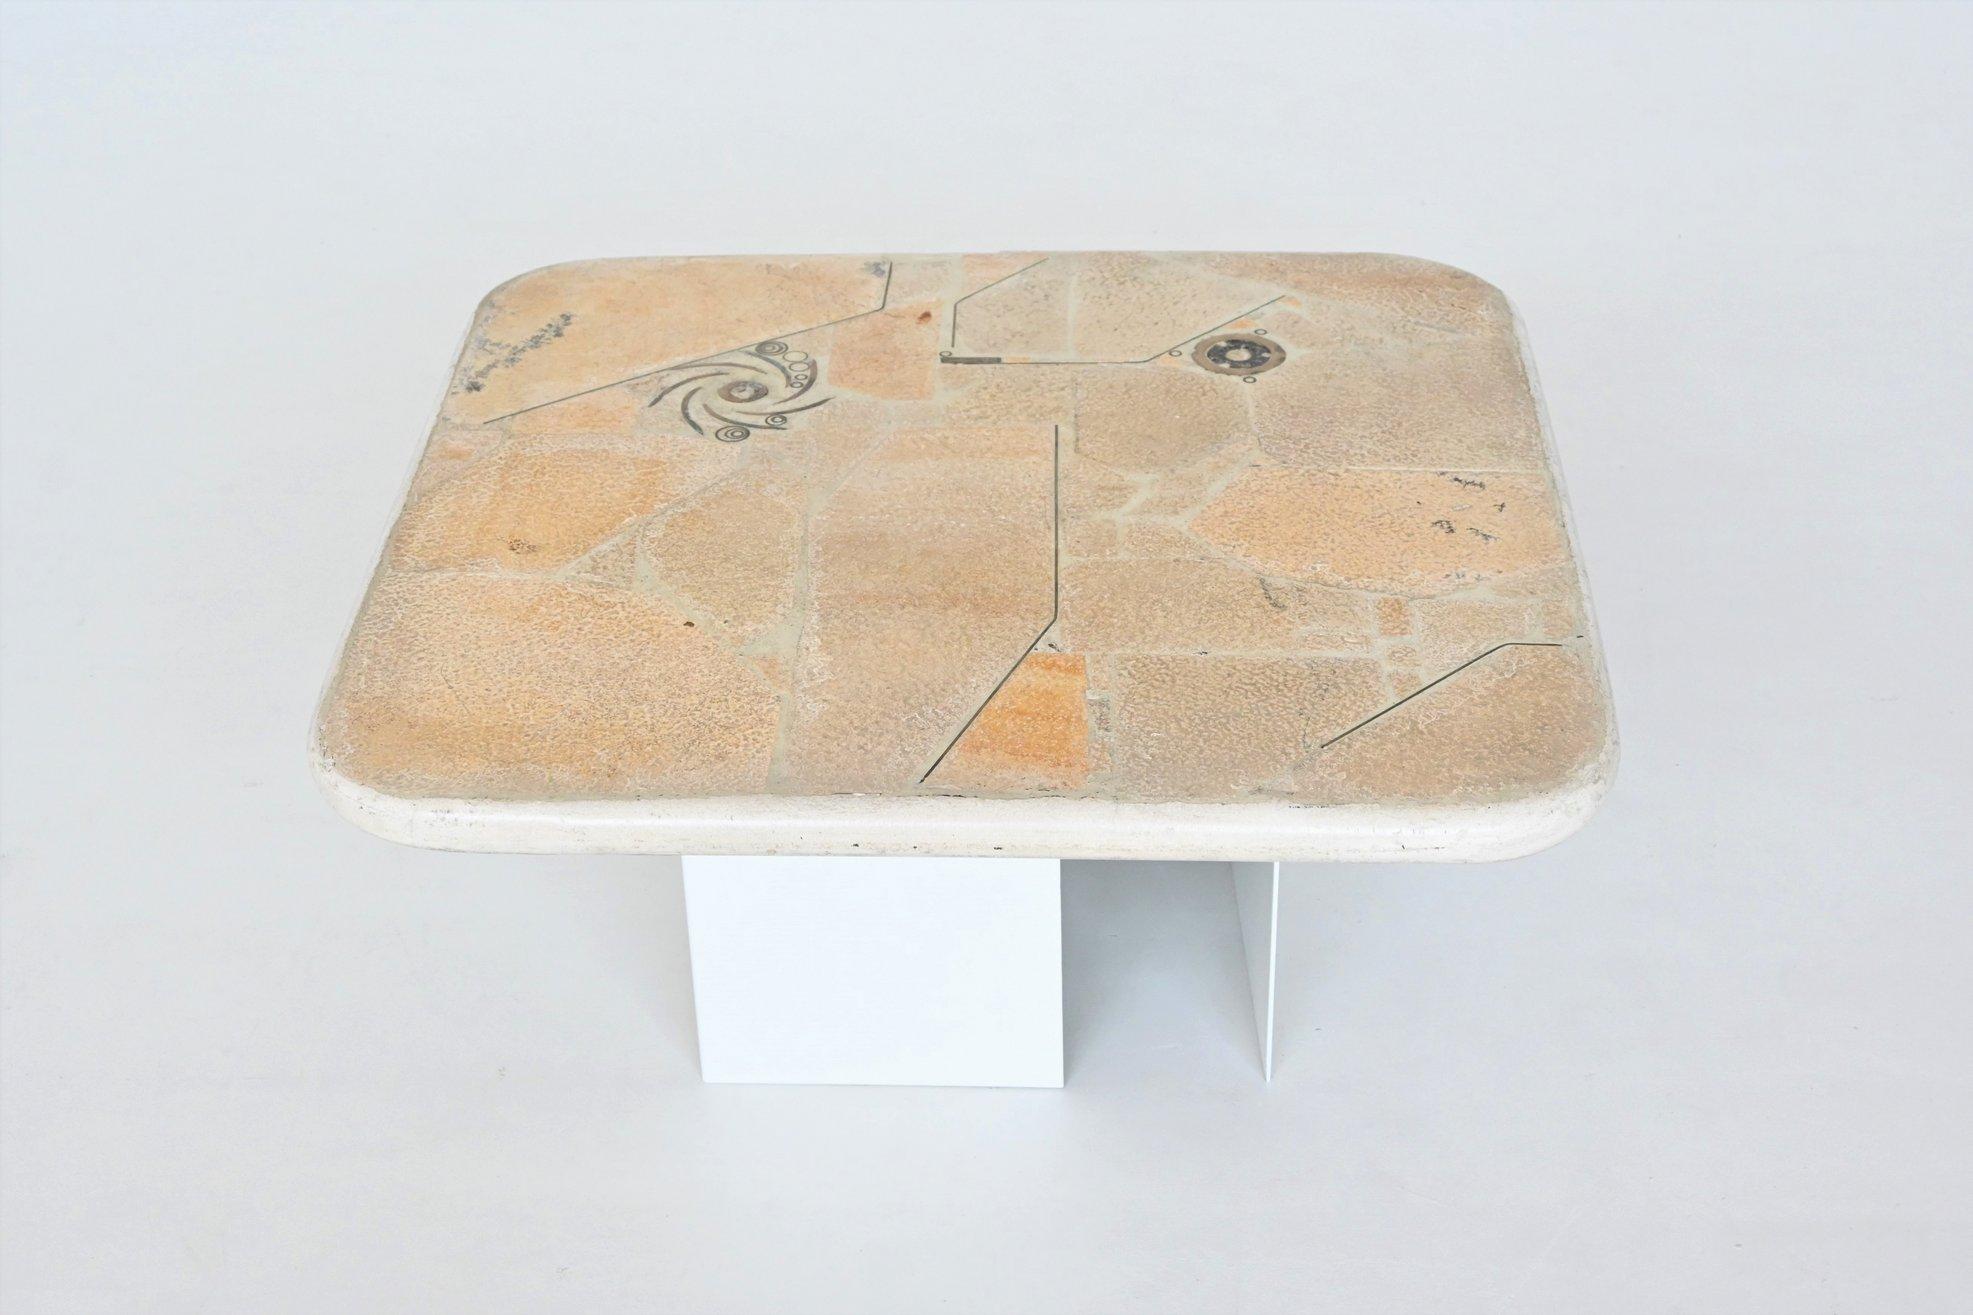 Magnifique table basse de forme carrée conçue et fabriquée par Marcus Kingma, Pays-Bas 1992. Le lourd plateau en béton blanc repose sur une base de deux socles en métal laqué blanc cassé qui peuvent être placés dans plusieurs positions. Une belle